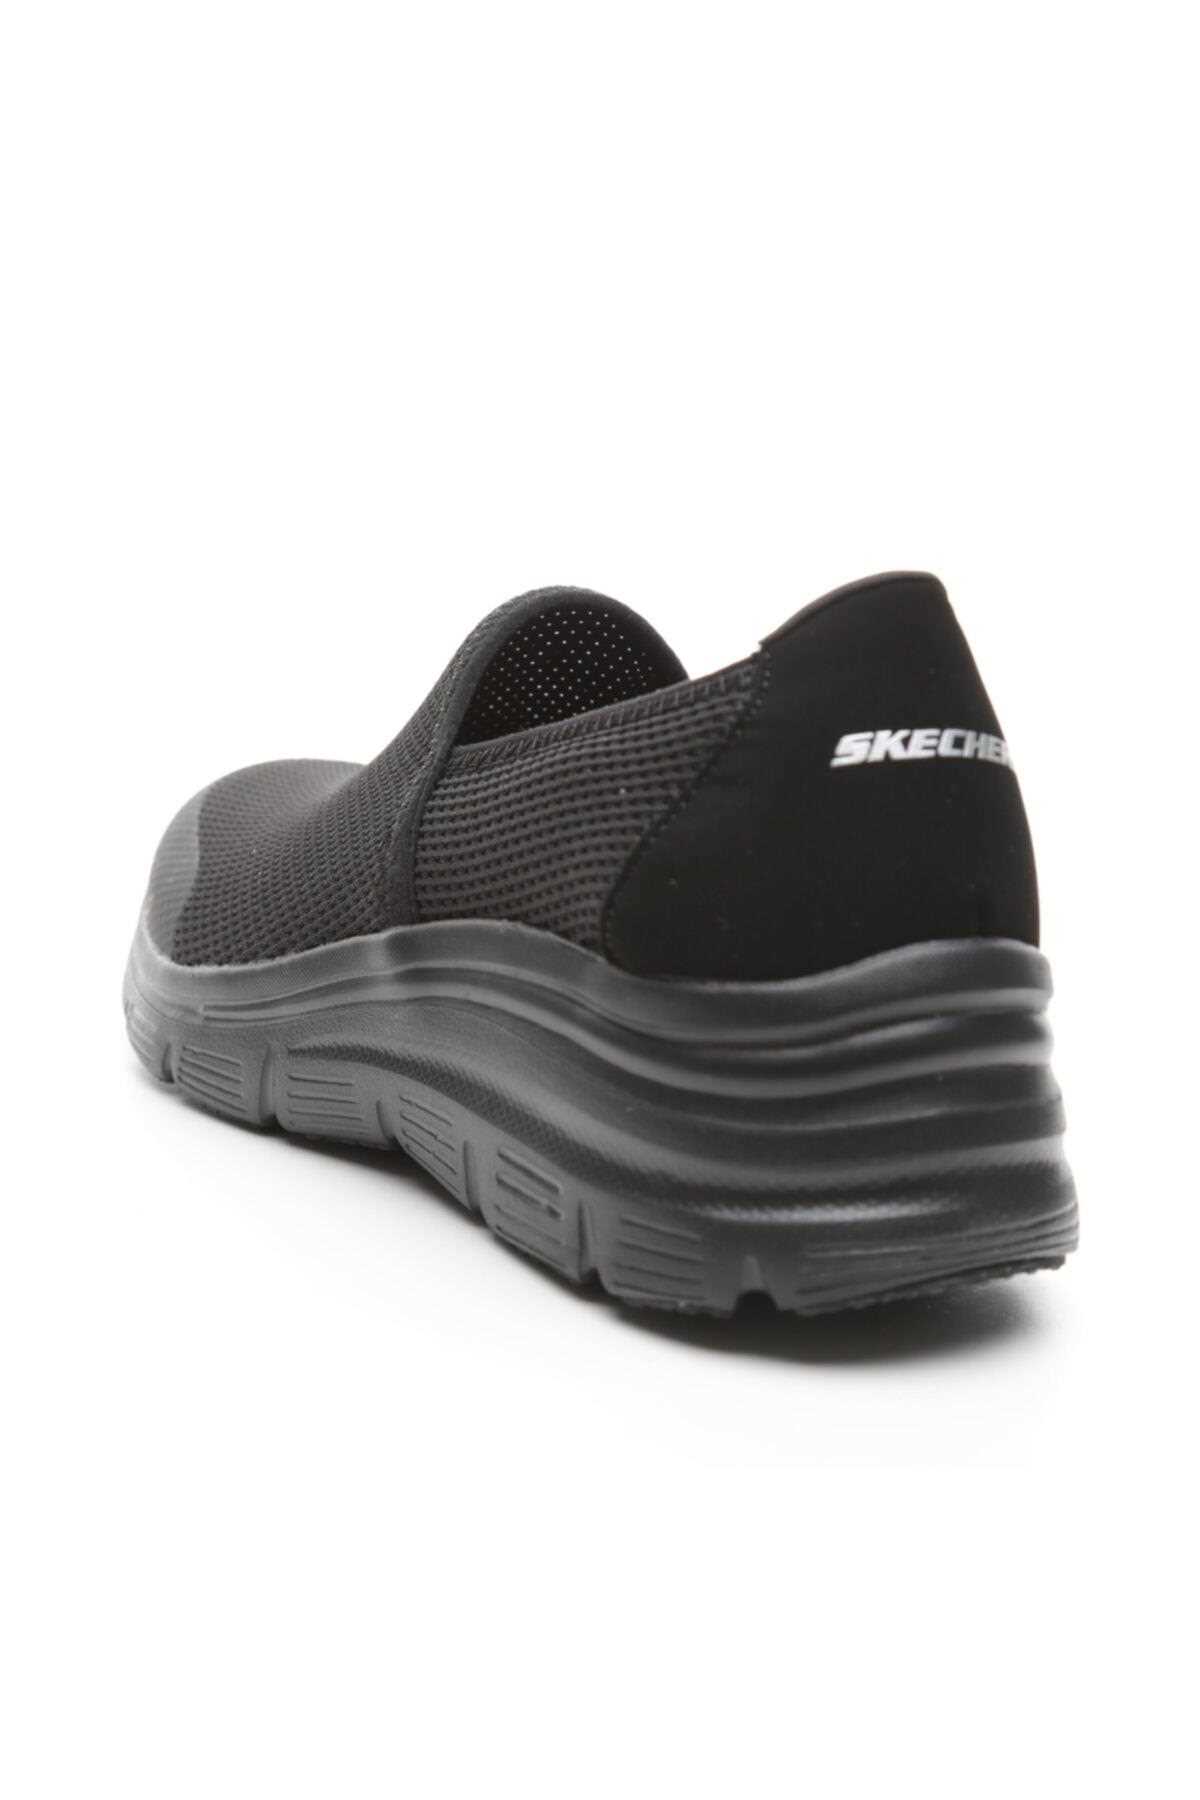 خرید کفش مخصوص پیاده روی زنانه از ترکیه SKECHERS کد ty31841209